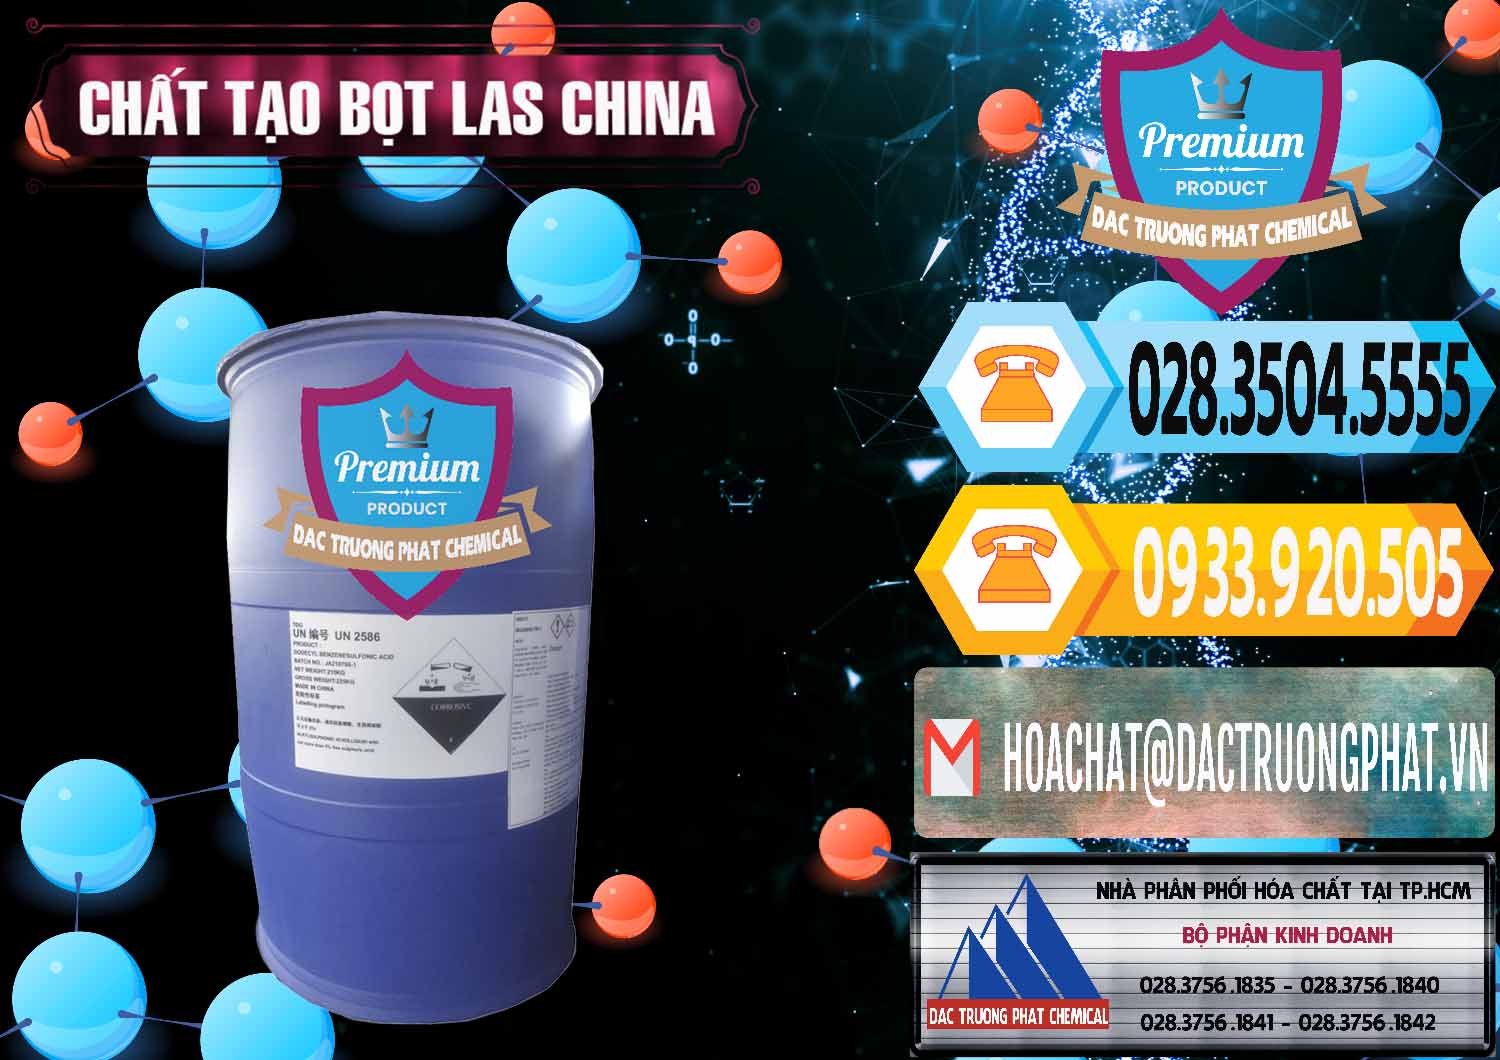 Công ty chuyên kinh doanh & bán Chất tạo bọt Las Trung Quốc China - 0451 - Công ty phân phối và nhập khẩu hóa chất tại TP.HCM - hoachattayrua.net